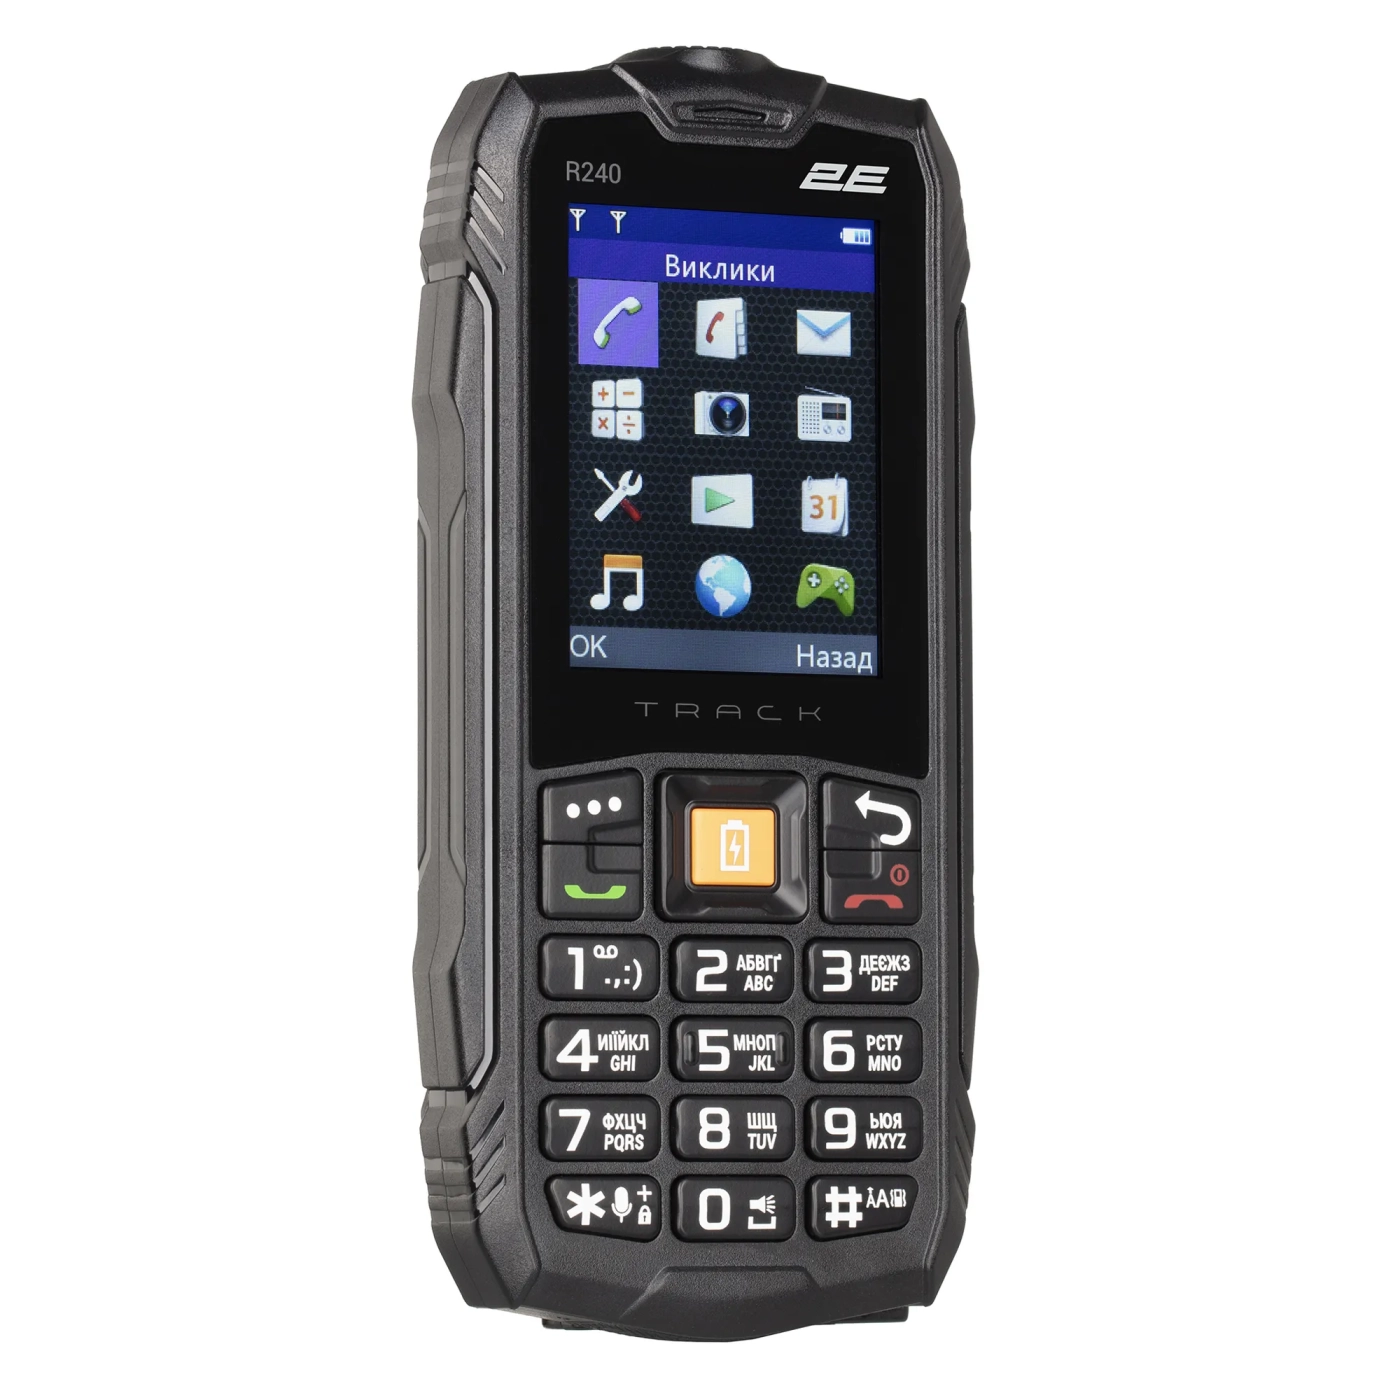 Купить Мобильный телефон 2E R240 2020 Black (680576170101) - фото 3